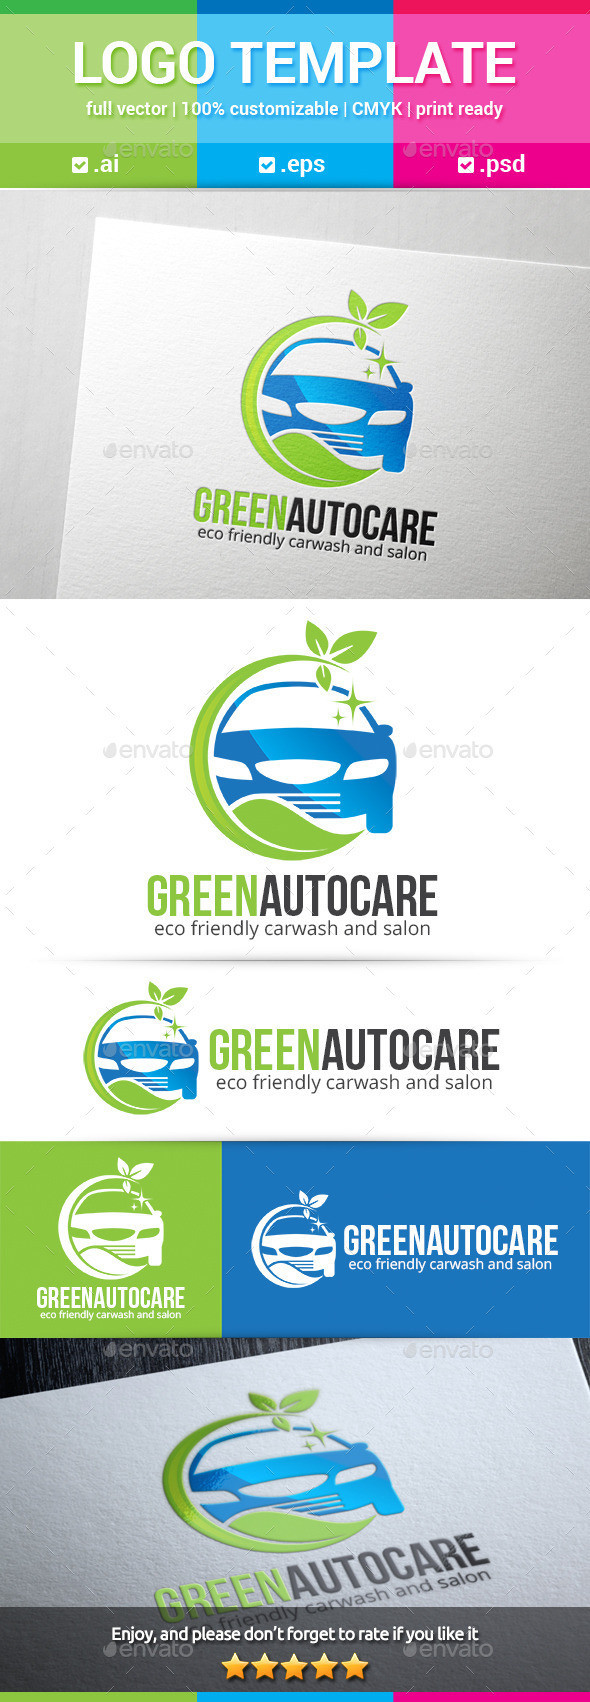 Greenautocare